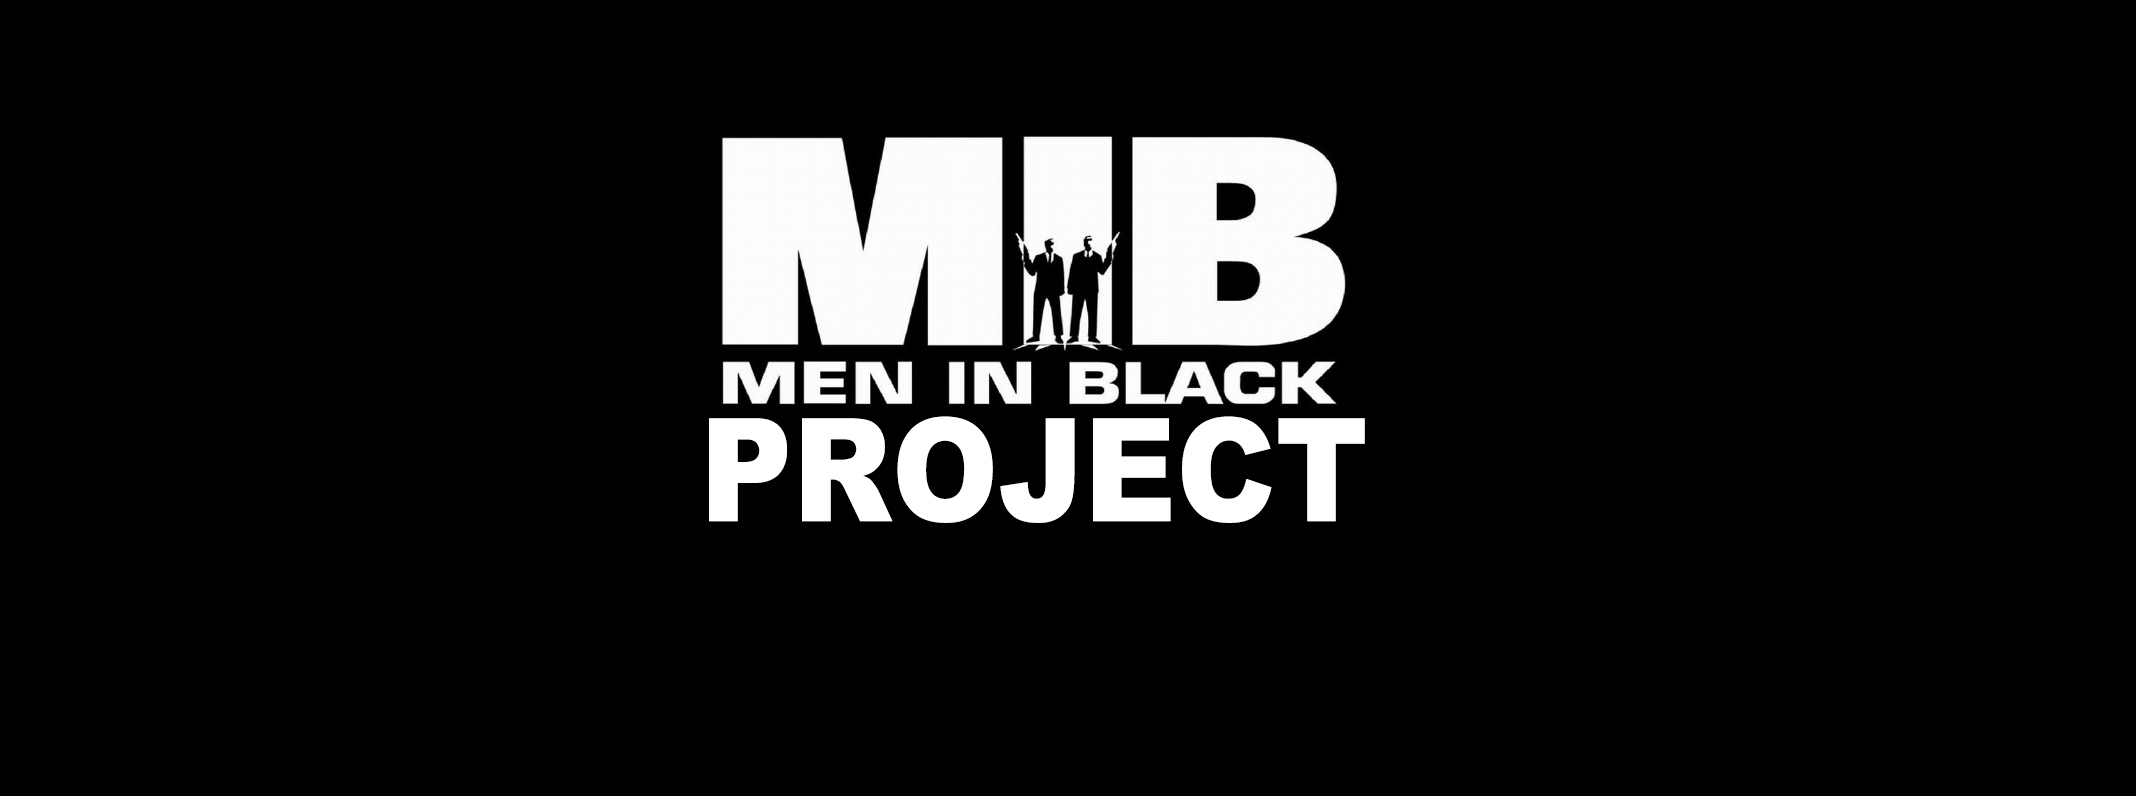 MIB Project